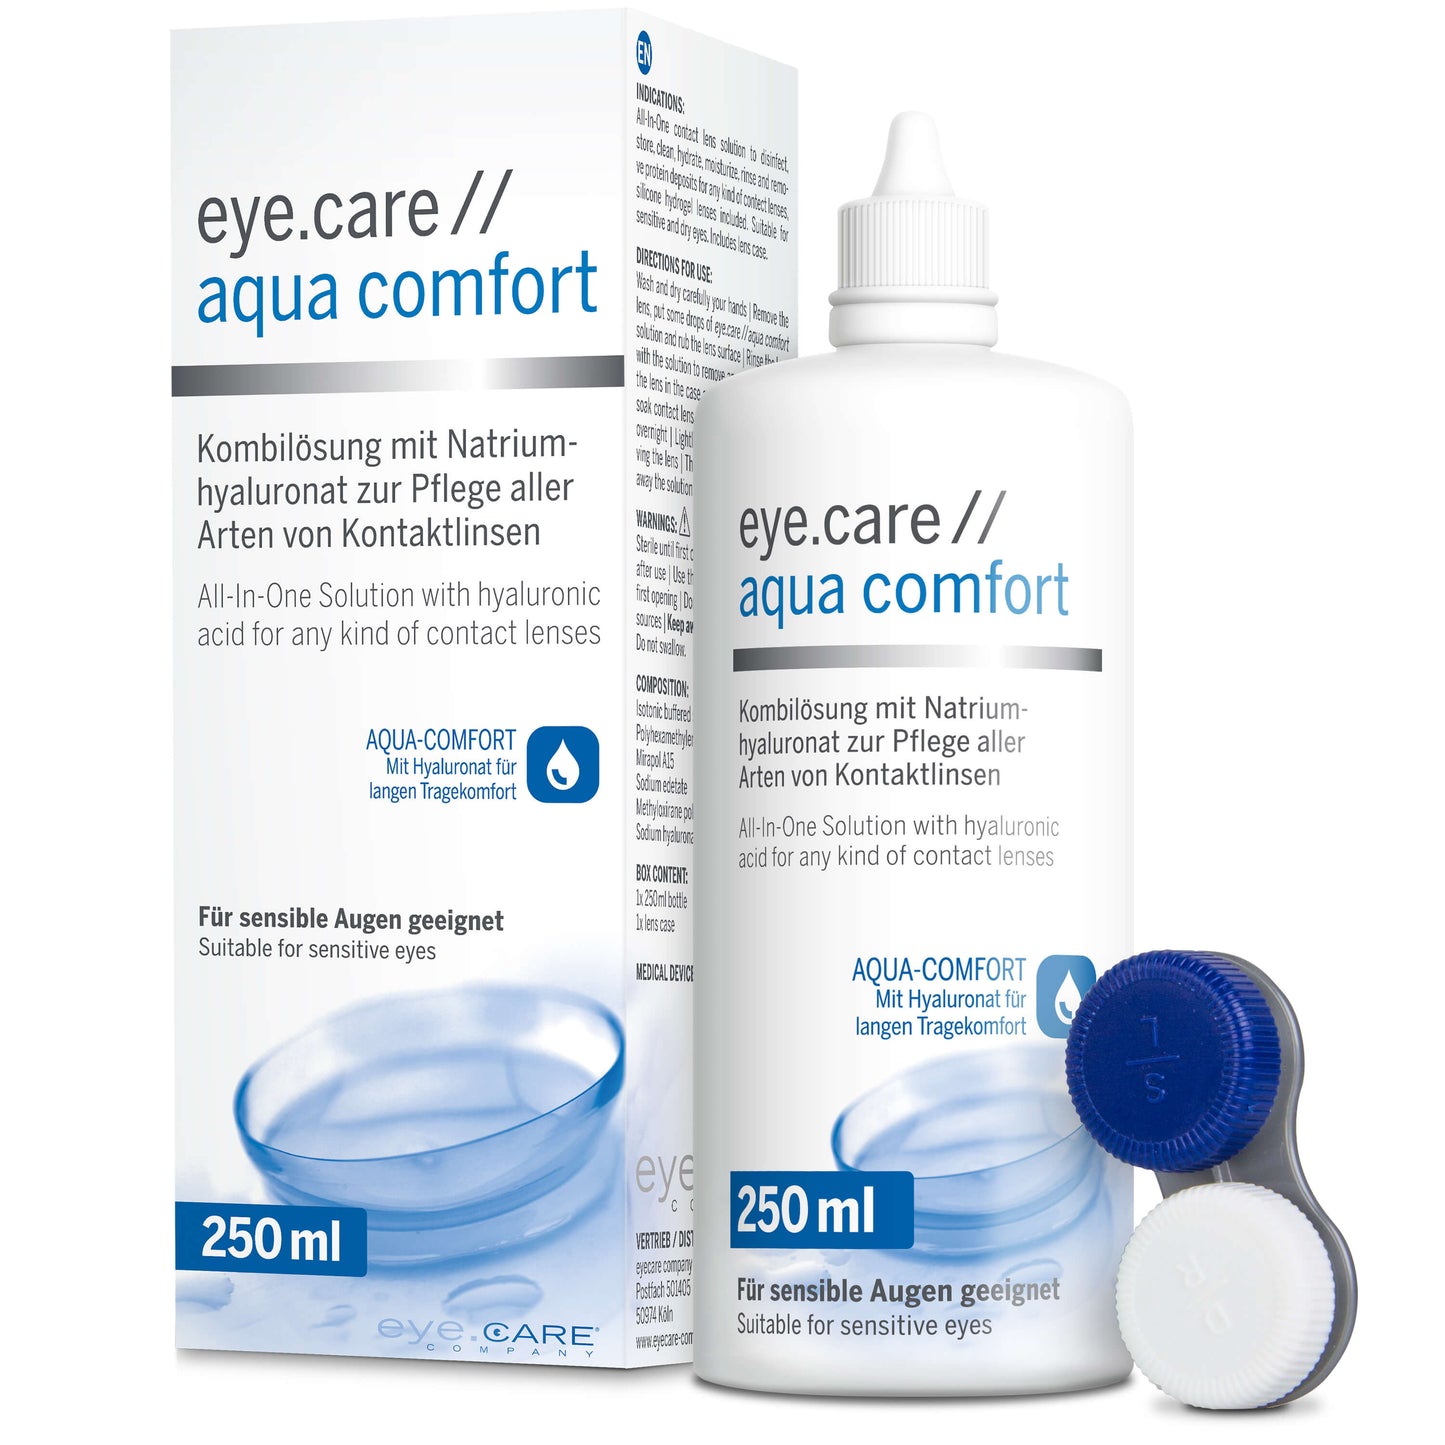 eye.care // aqua comfort 250 ml